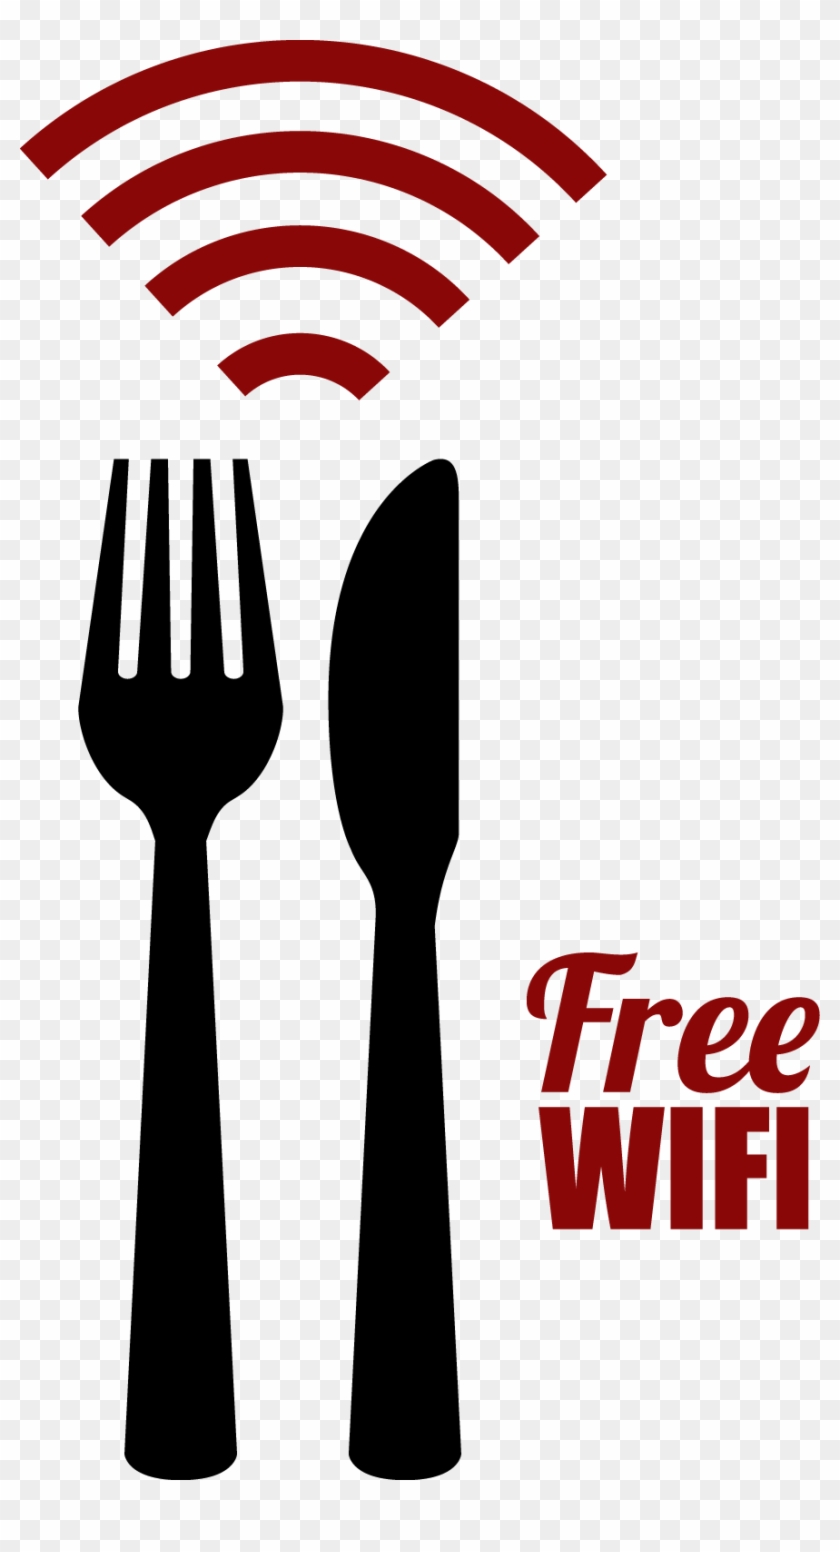 Free Wifi Graphic - Wi-fi #746553